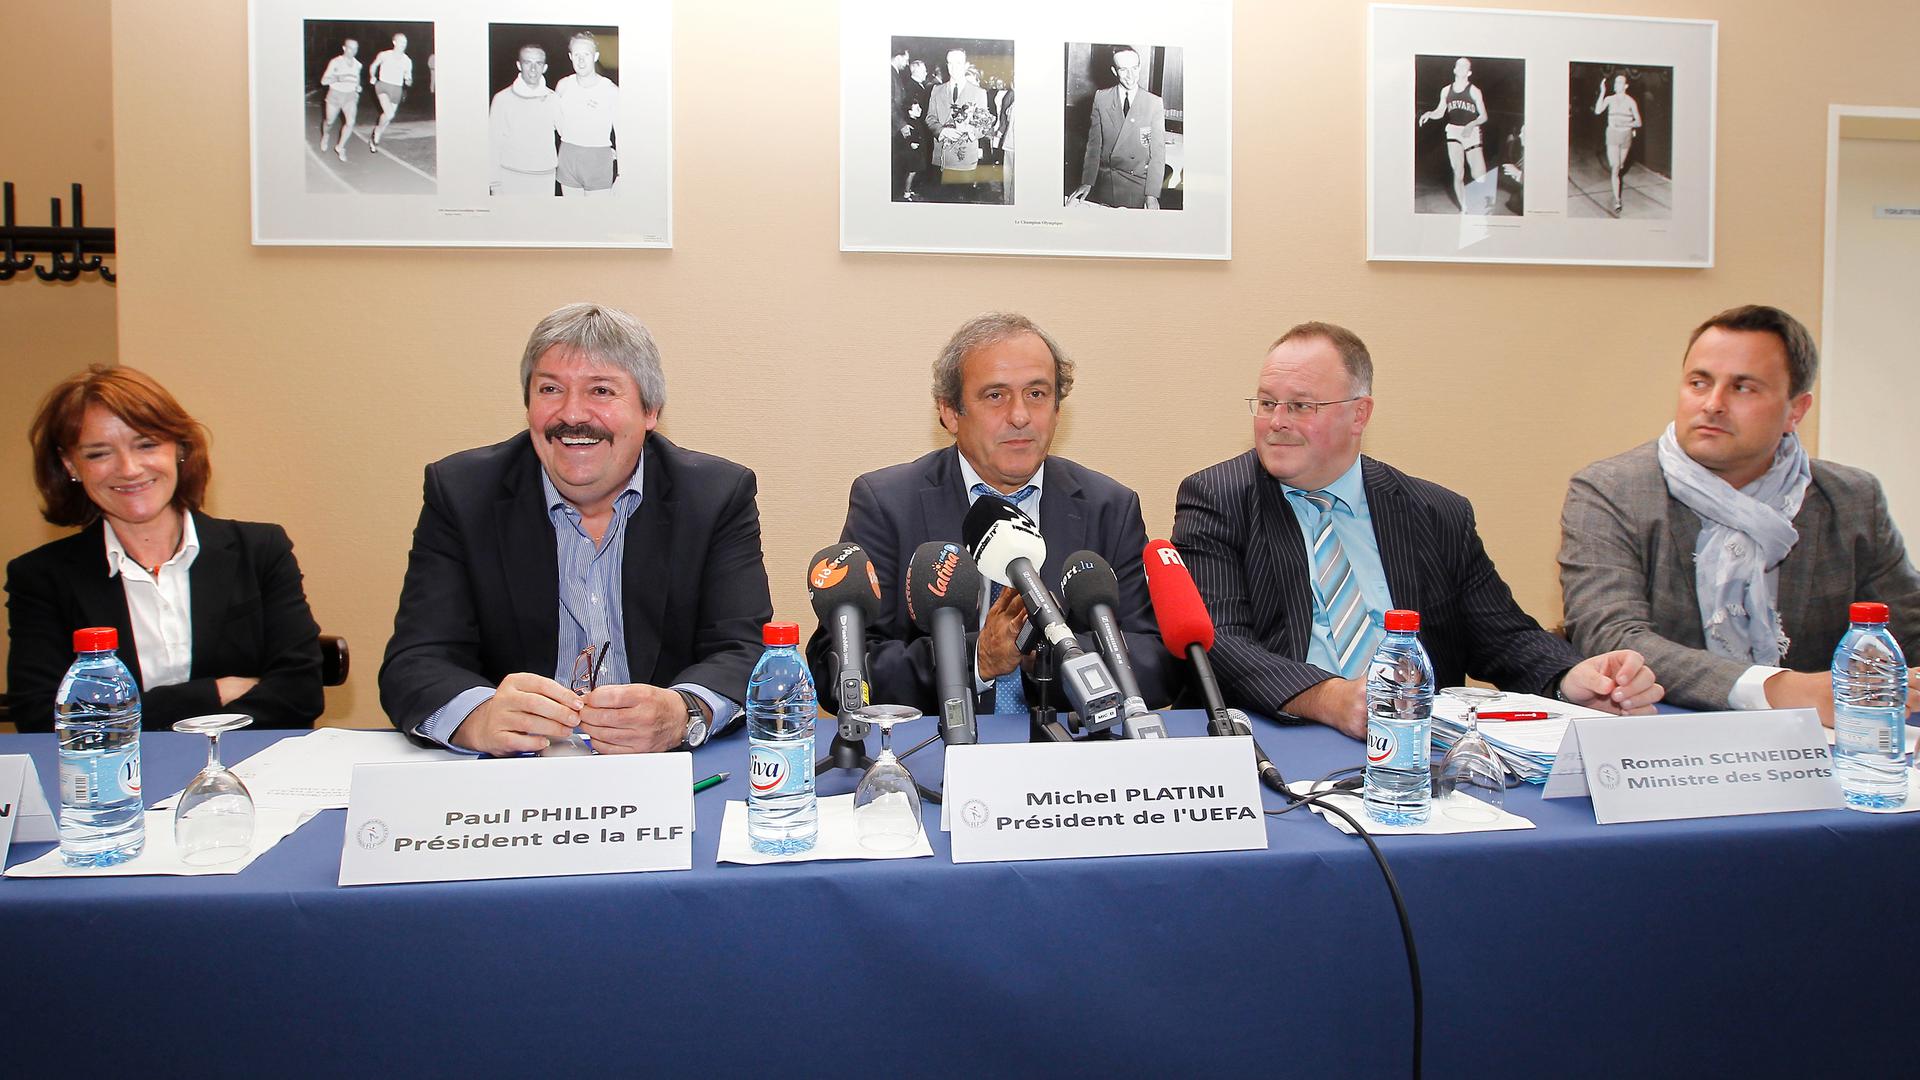 La venue de Michel Platini, alors président de l'UEFA, va s'avérer décisive pour faire avancer le projet.